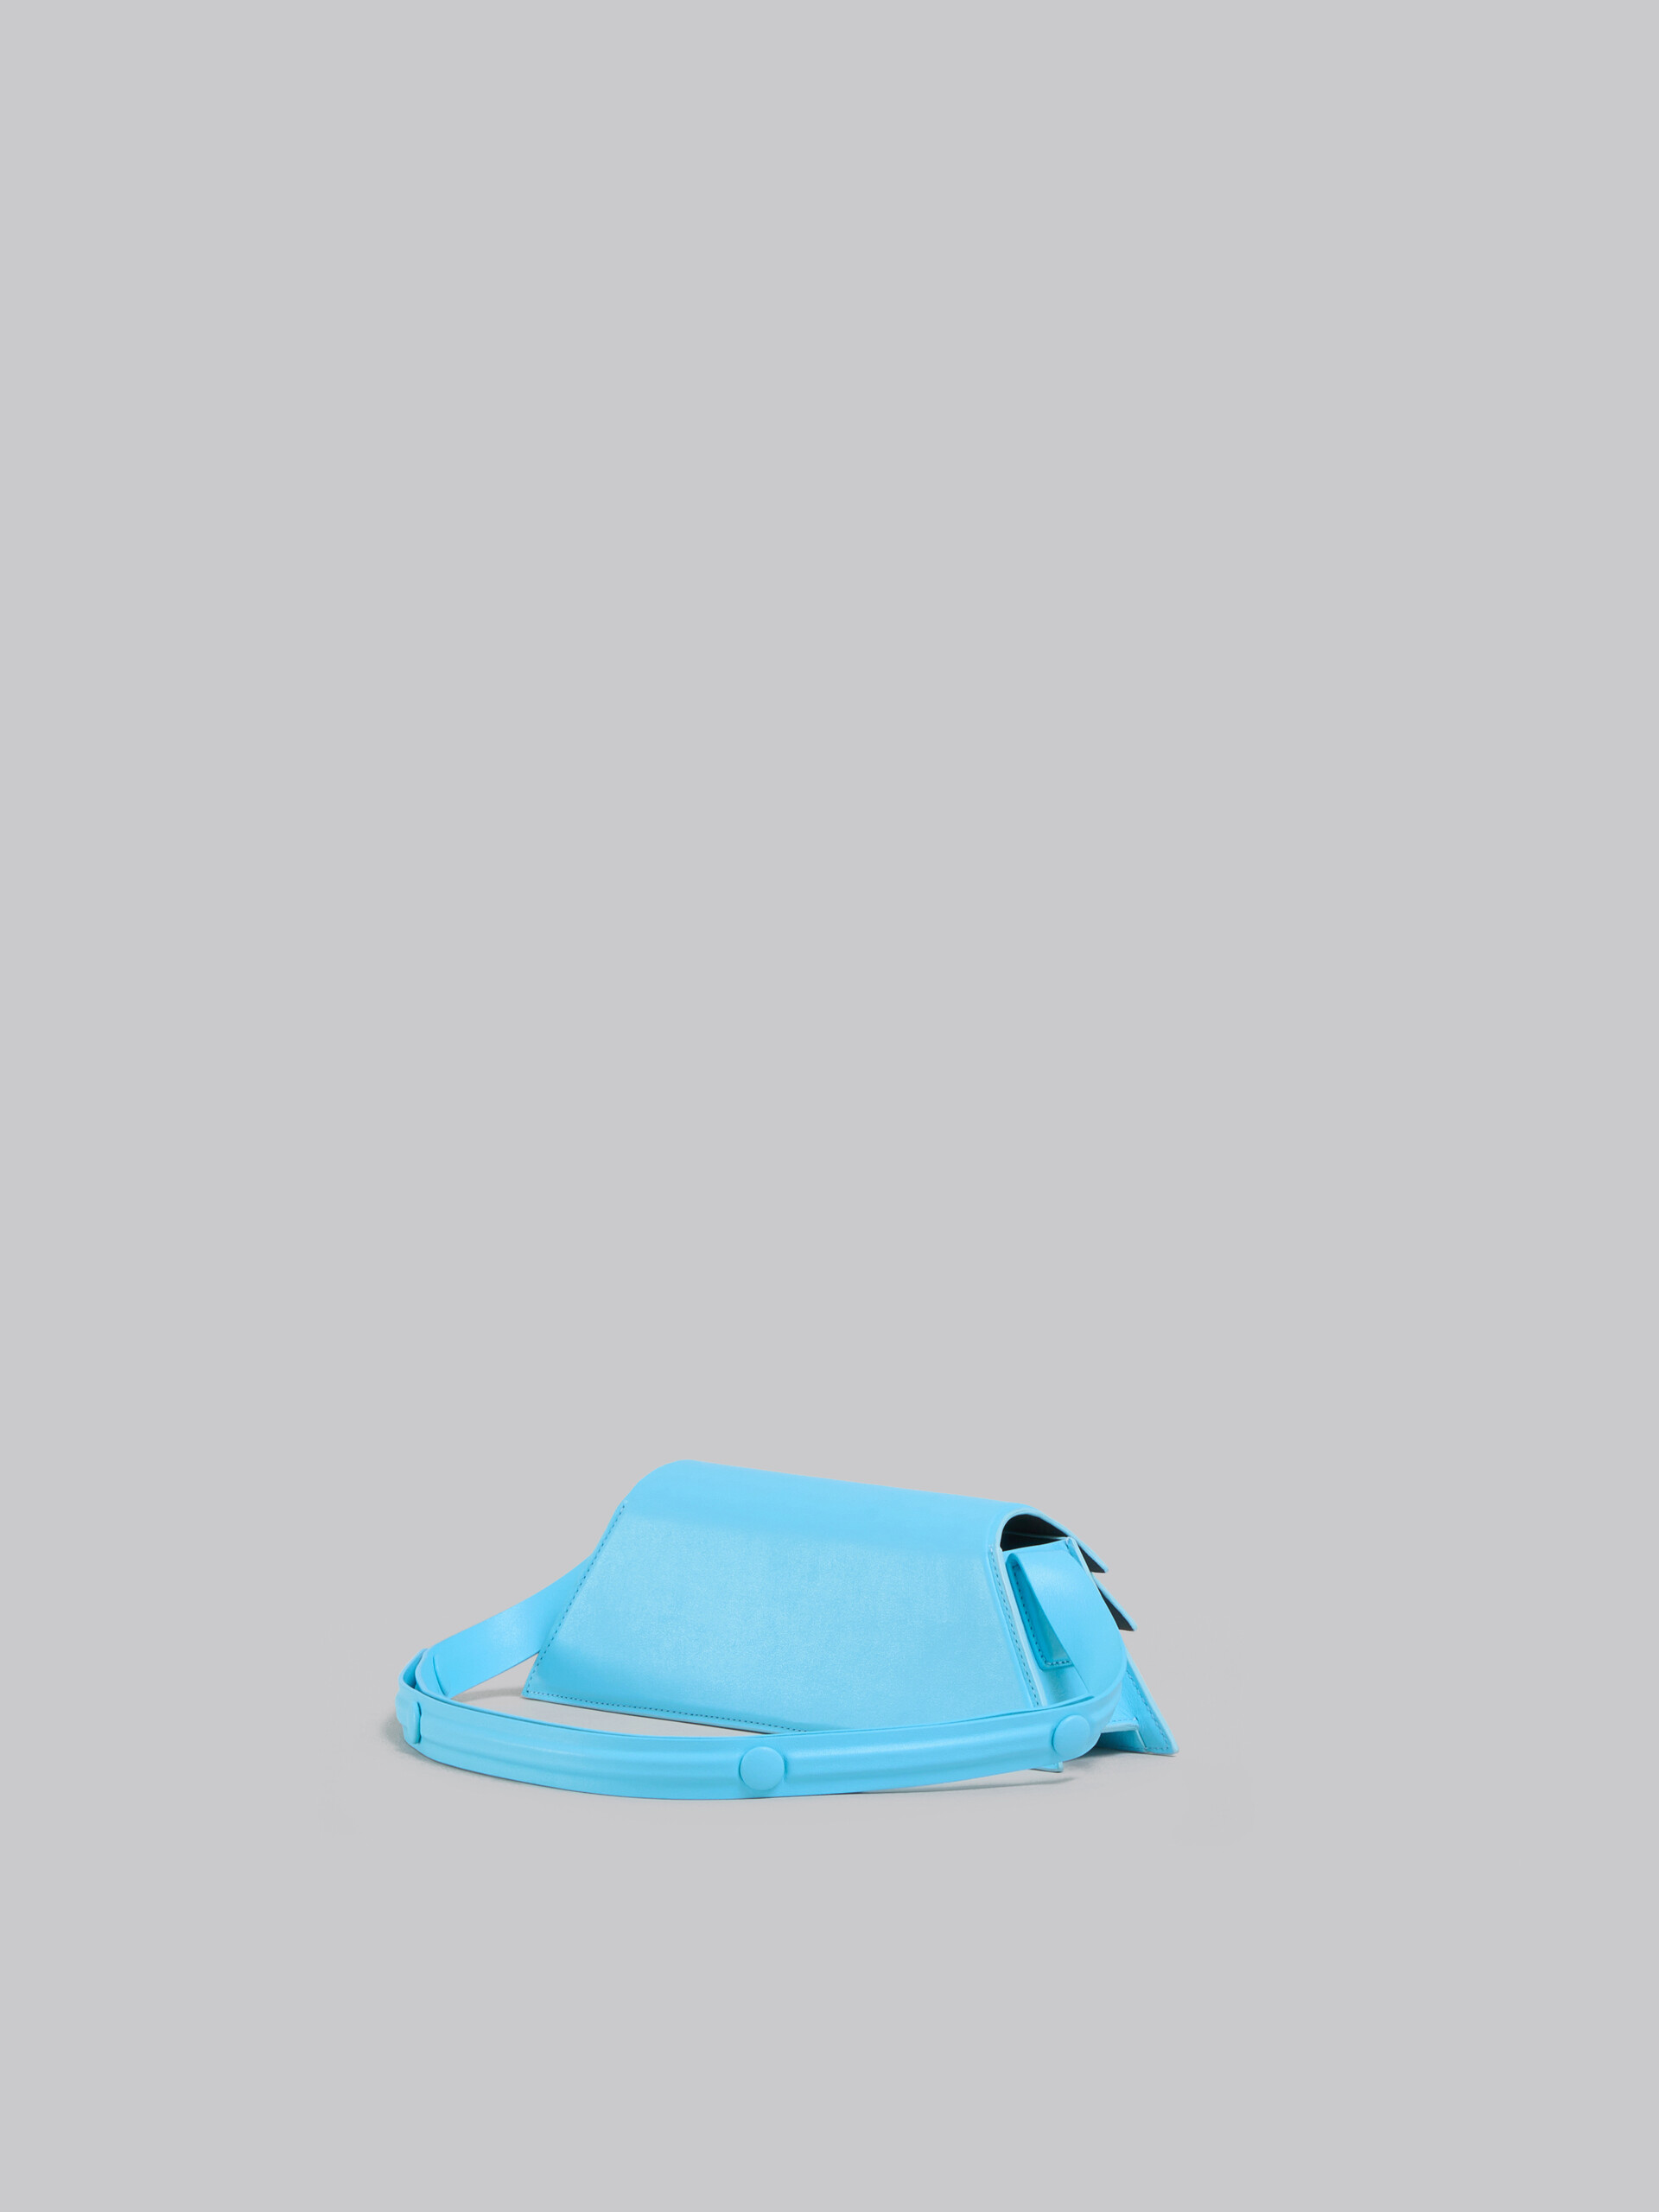 Mini-sac Trunkoise en cuir lisse bleu clair - Sacs portés épaule - Image 3